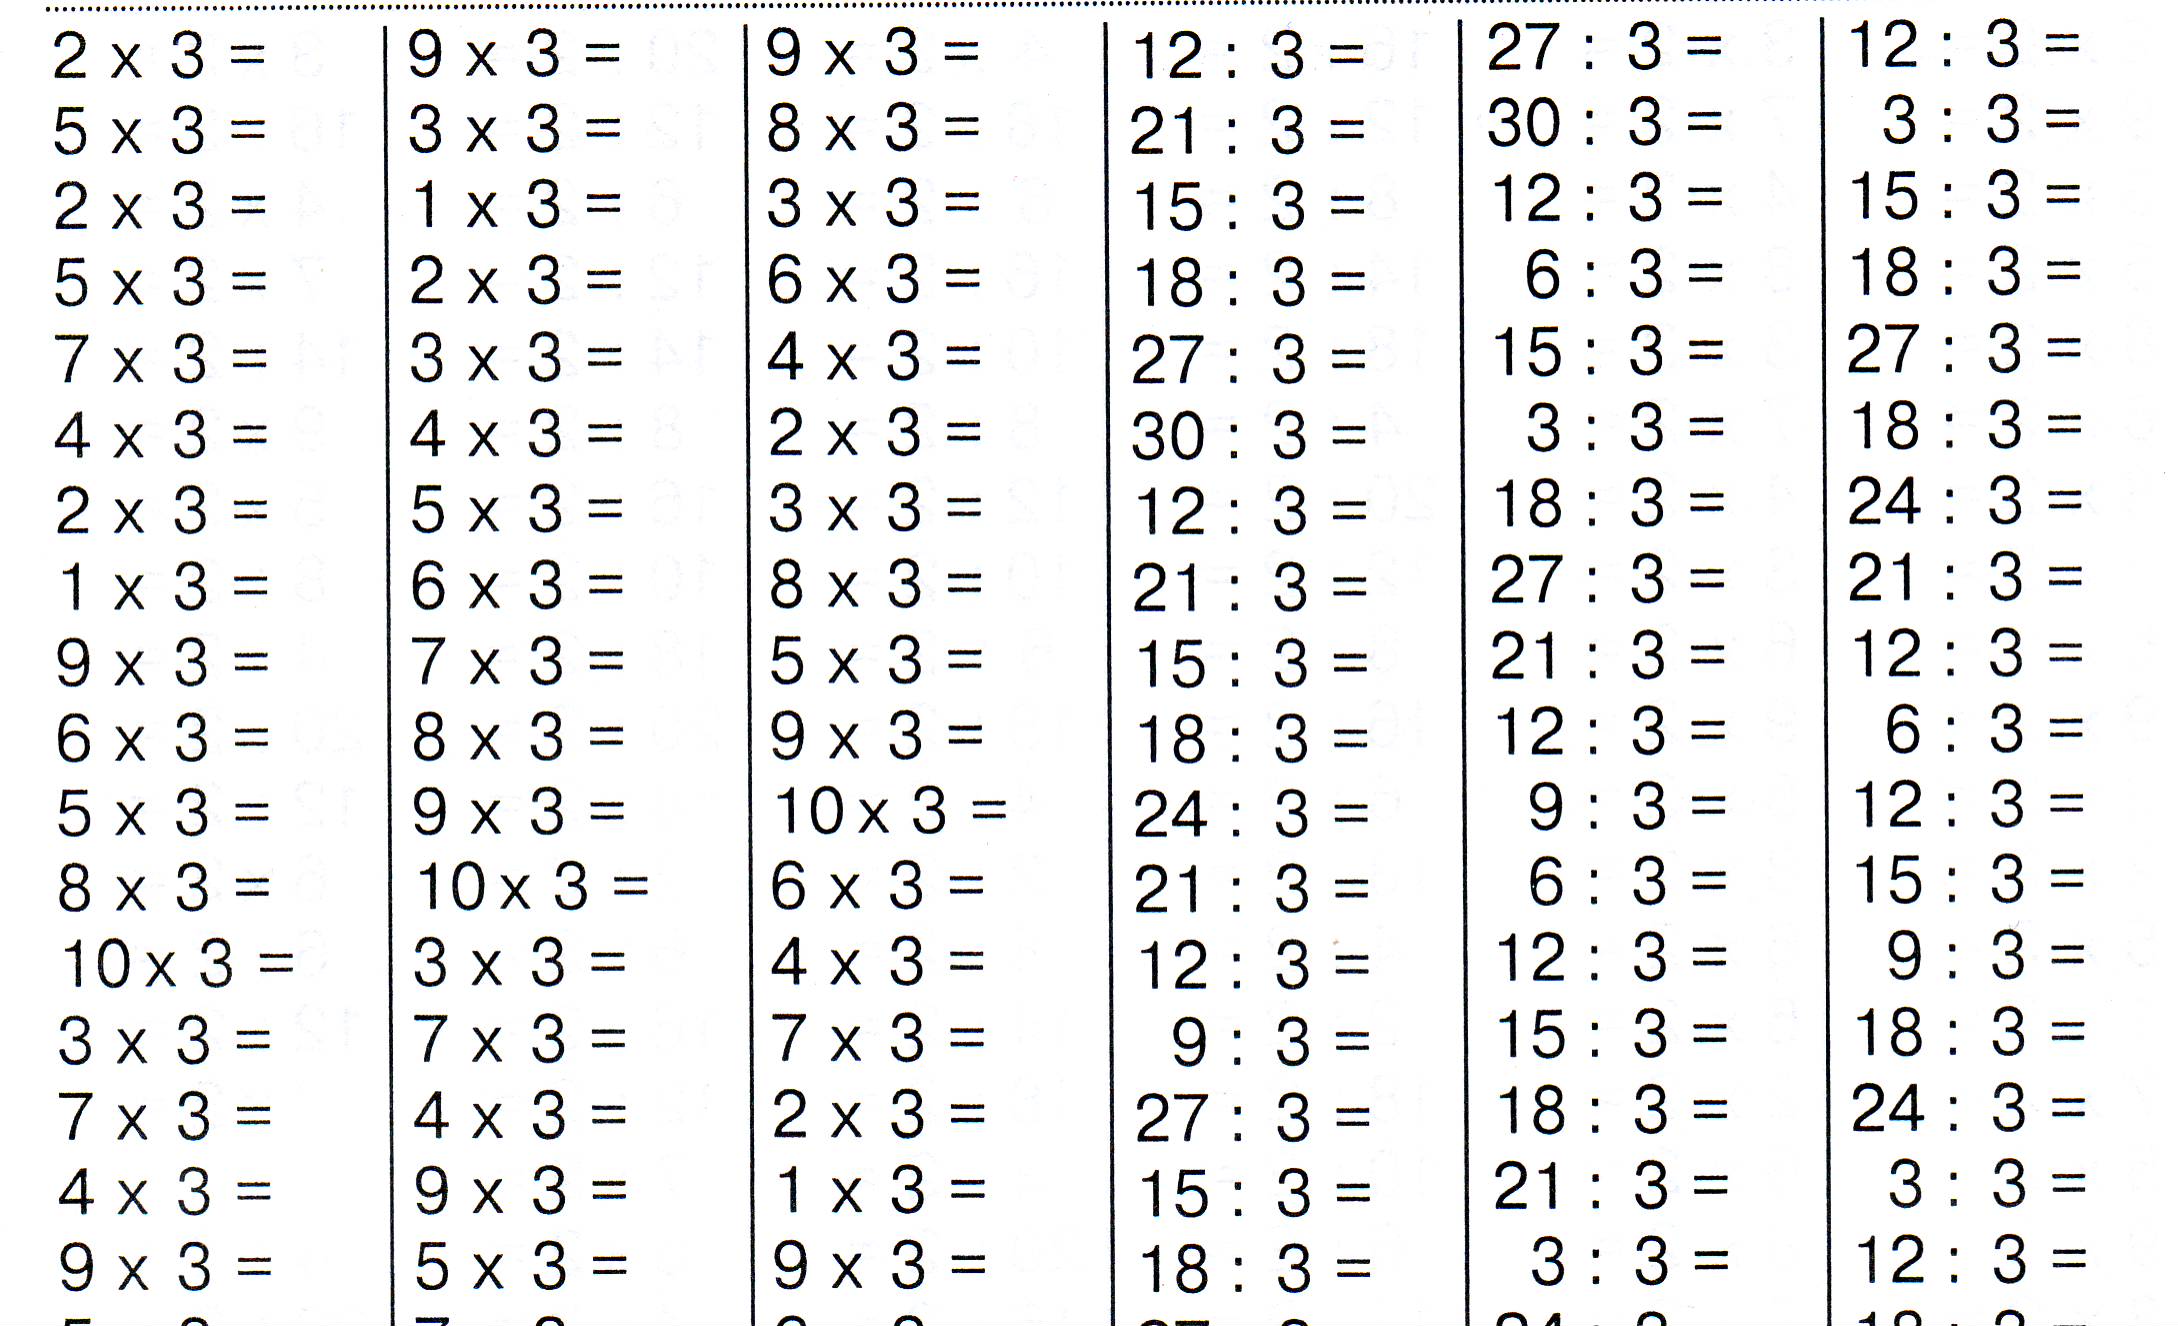 Карточки для проверки таблицы умножения и деления на 2,3,4,5,6,7,8,9. Для отработки автоматизации навыков по таблице умножения.